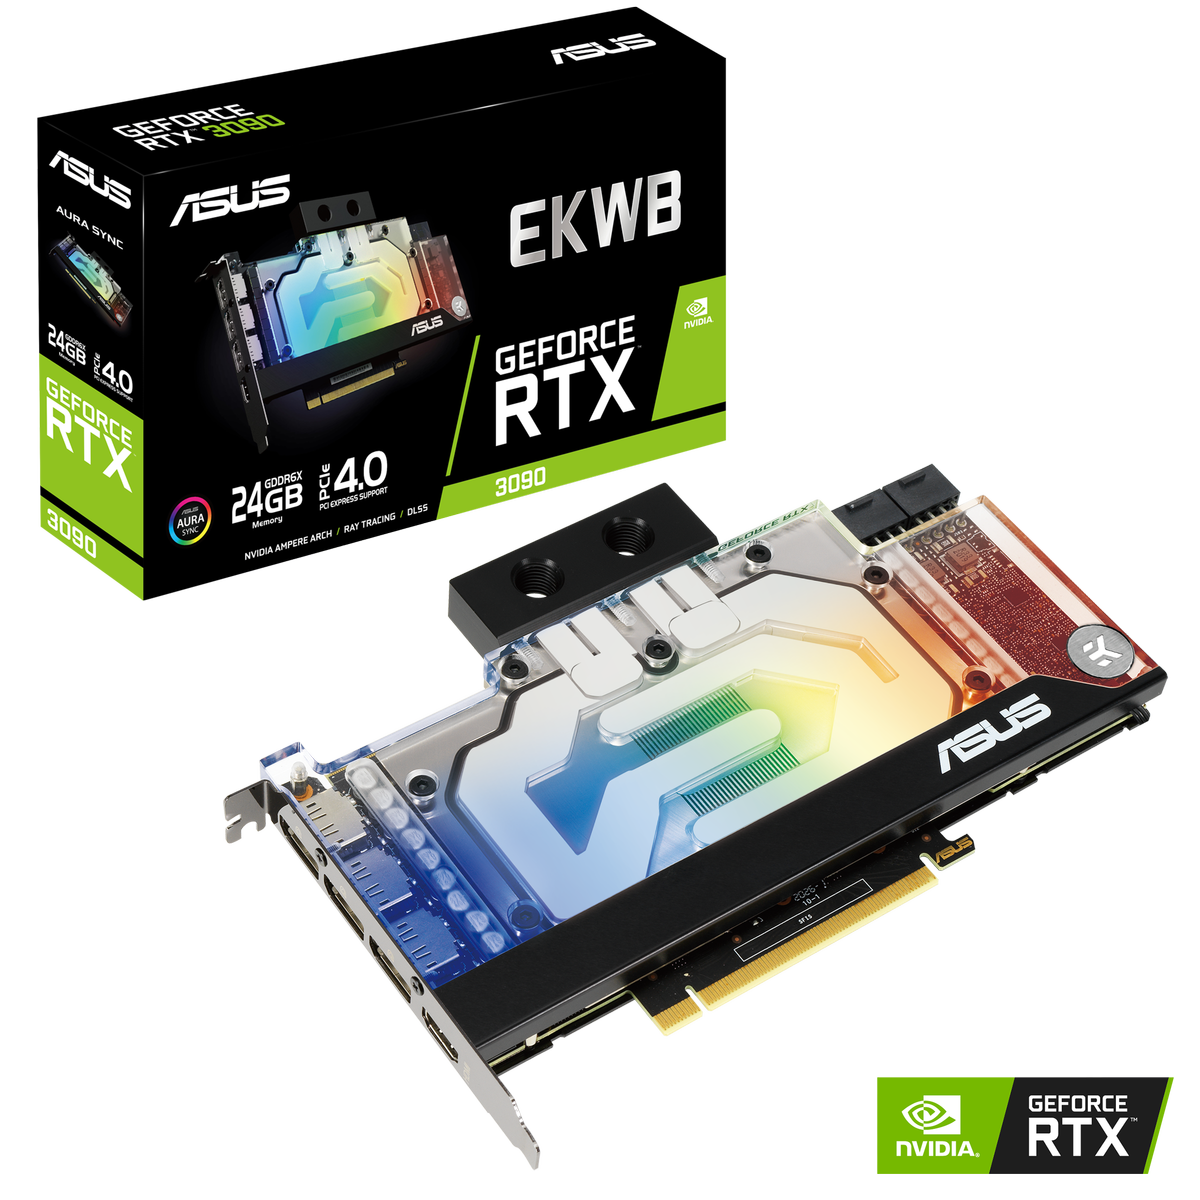 GeForce RTX 3090 EKWB - 24G